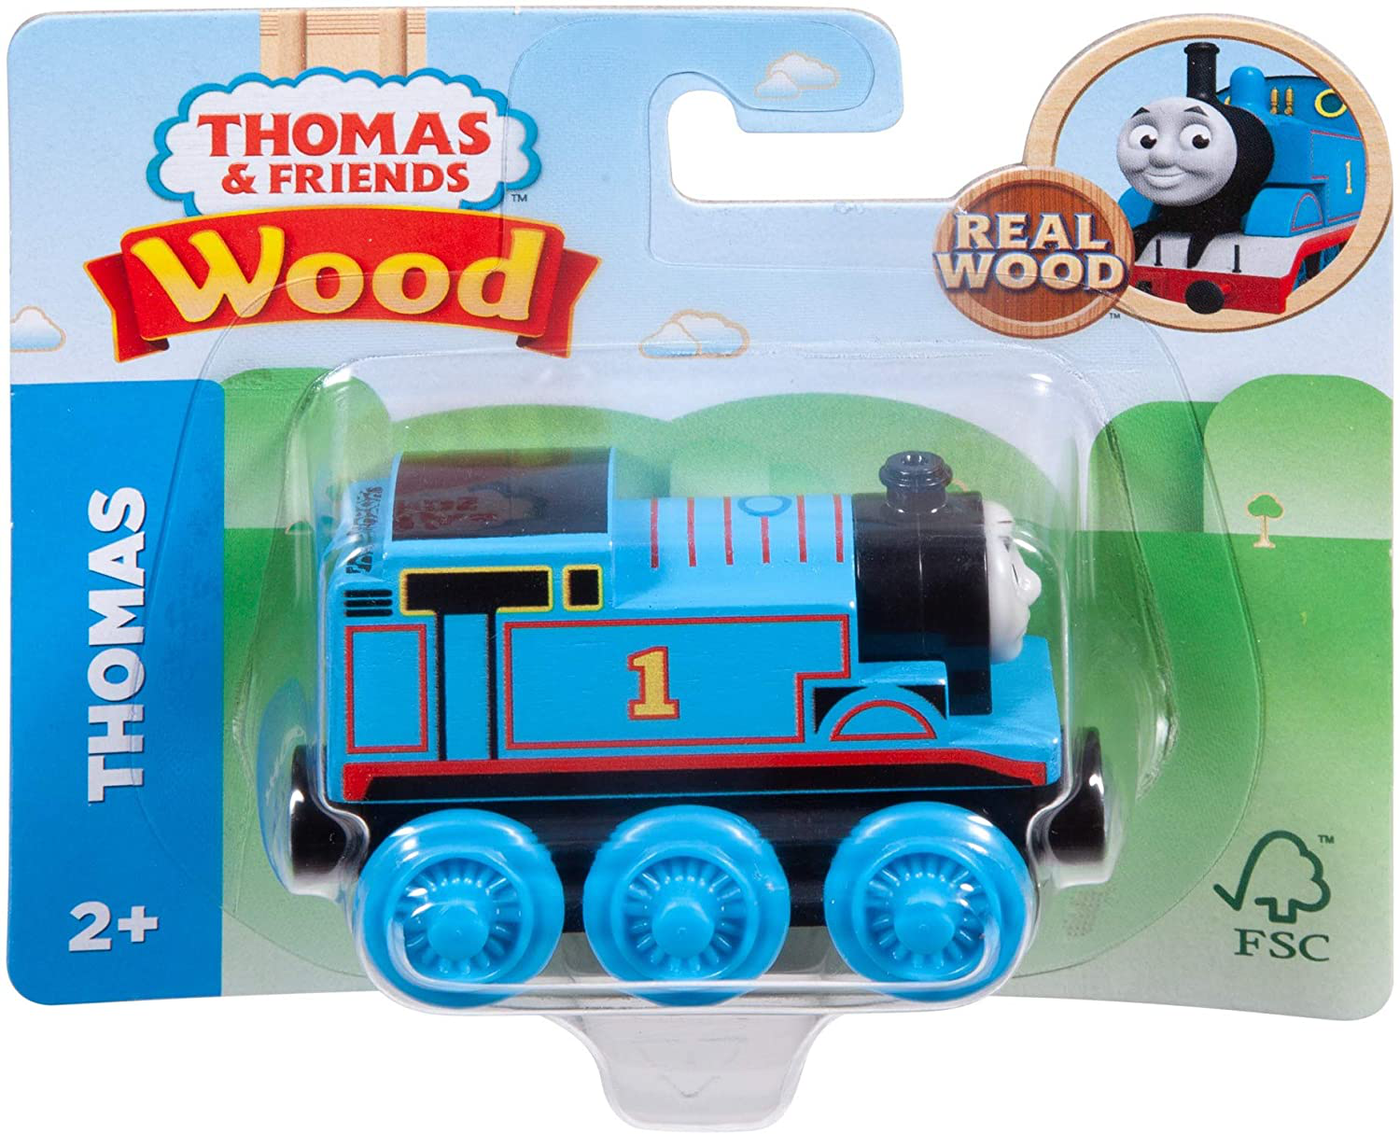 Thomas & Friends Wood, Diesel